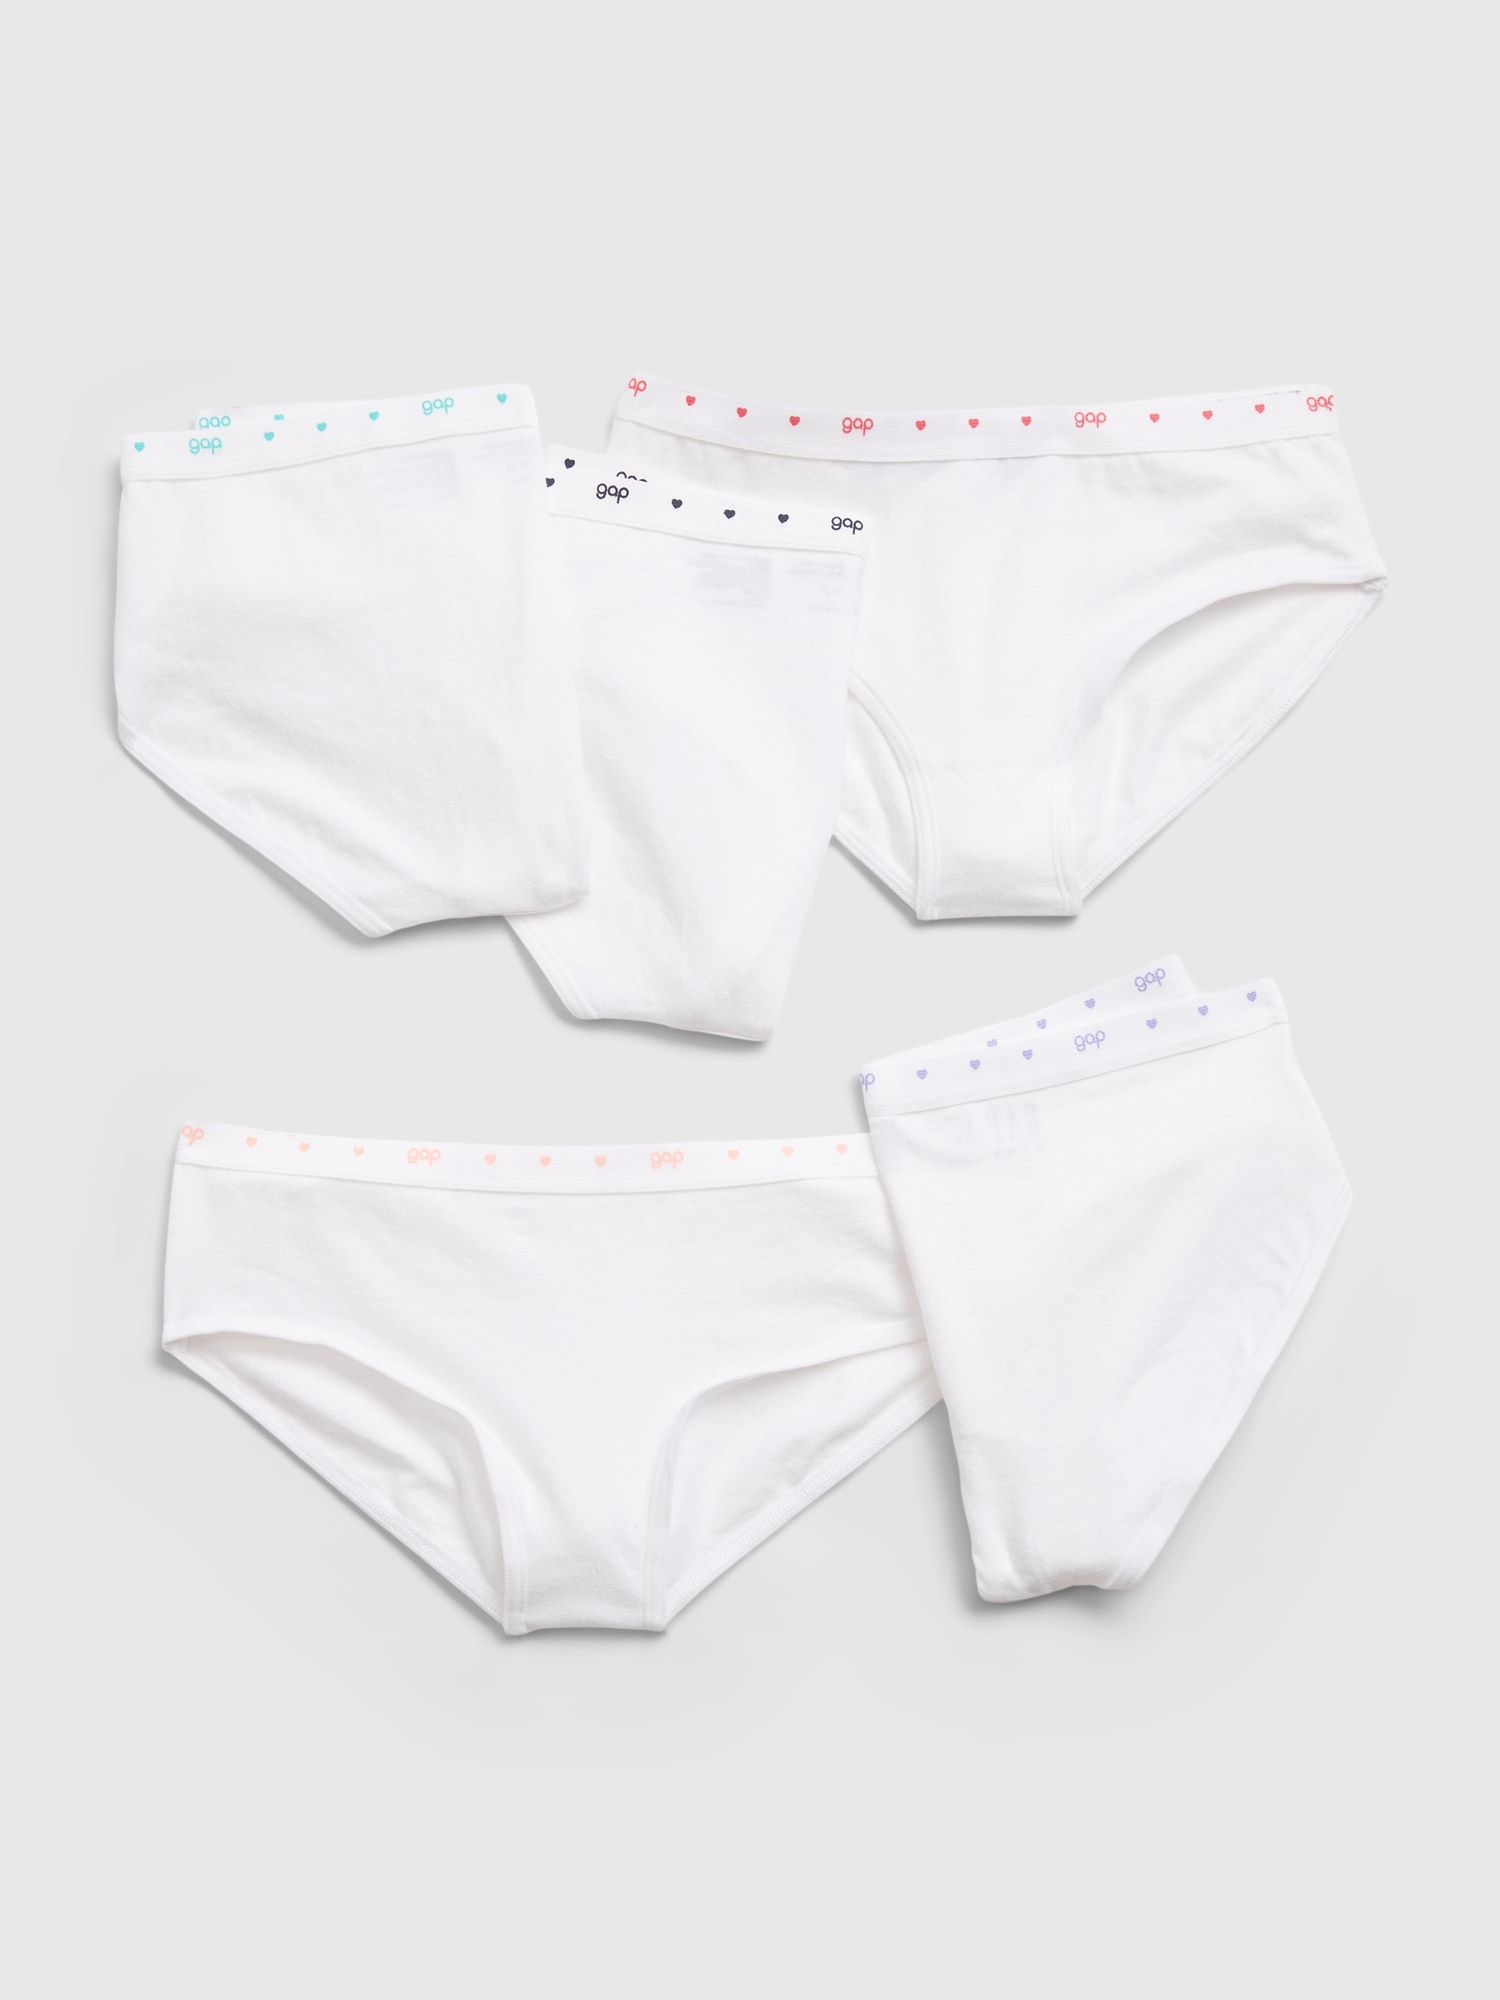 3 Pairs Girls Bikini Briefs Quality 100% Cotton Kids Underwear